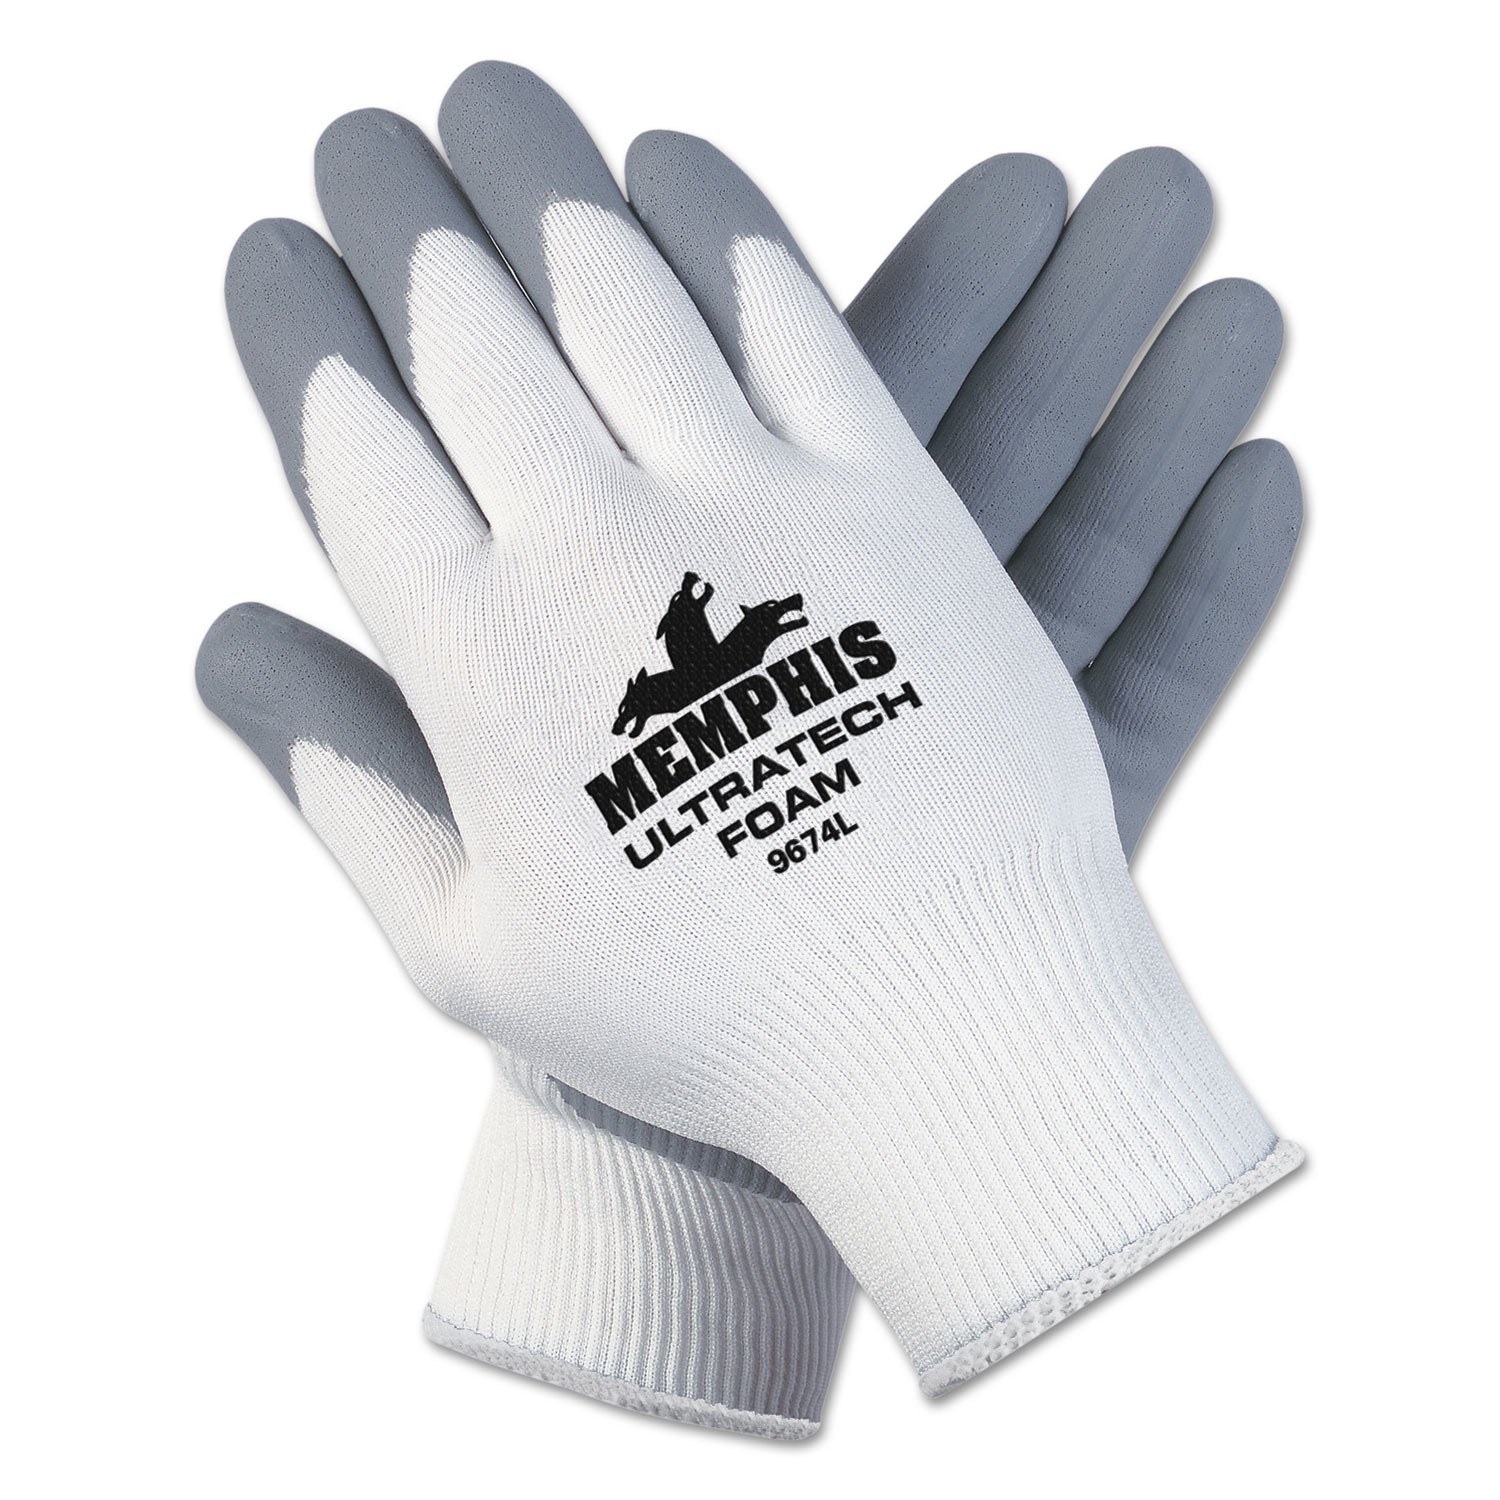 ultra-tech-foam-seamless-nylon-knit-gloves-x-large-white-gray-dozen_crw9674xldz - 1